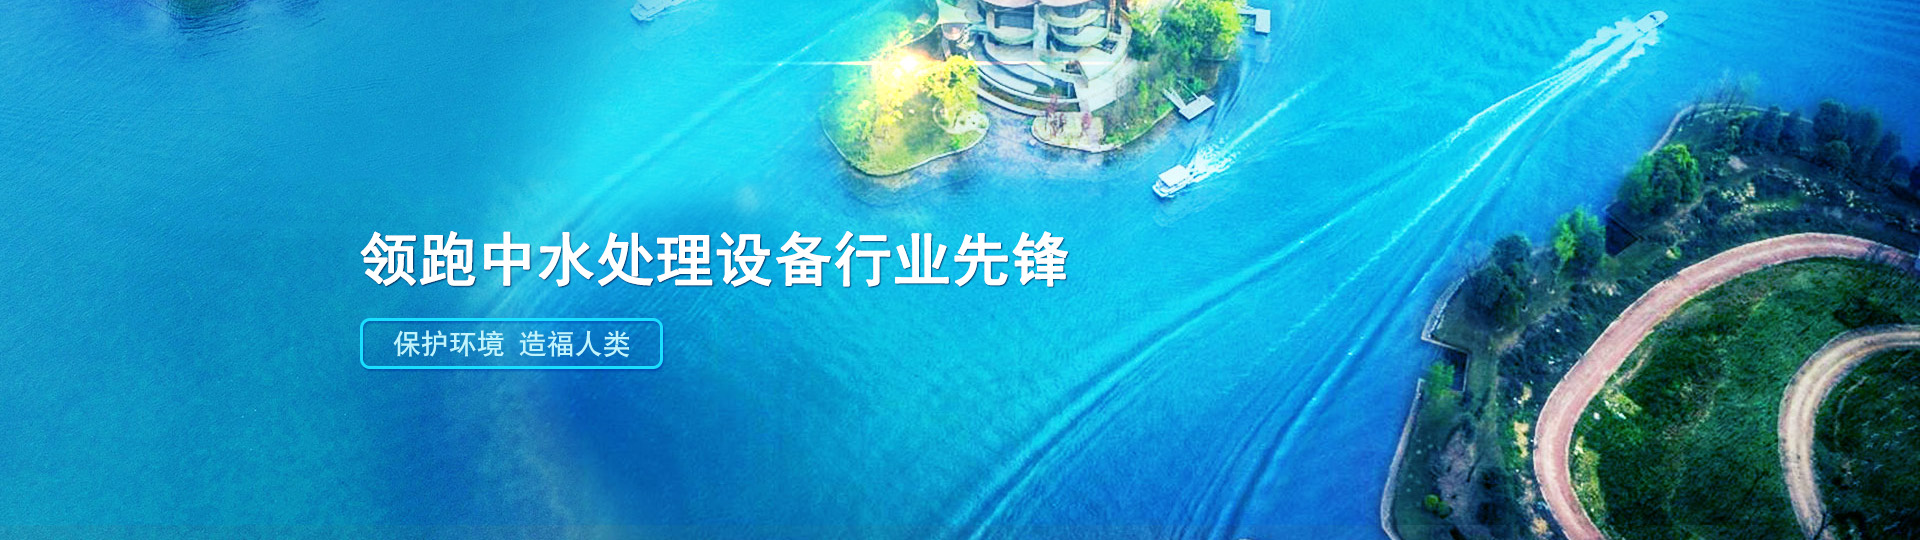 武汉智唯水业环保科技有限公司